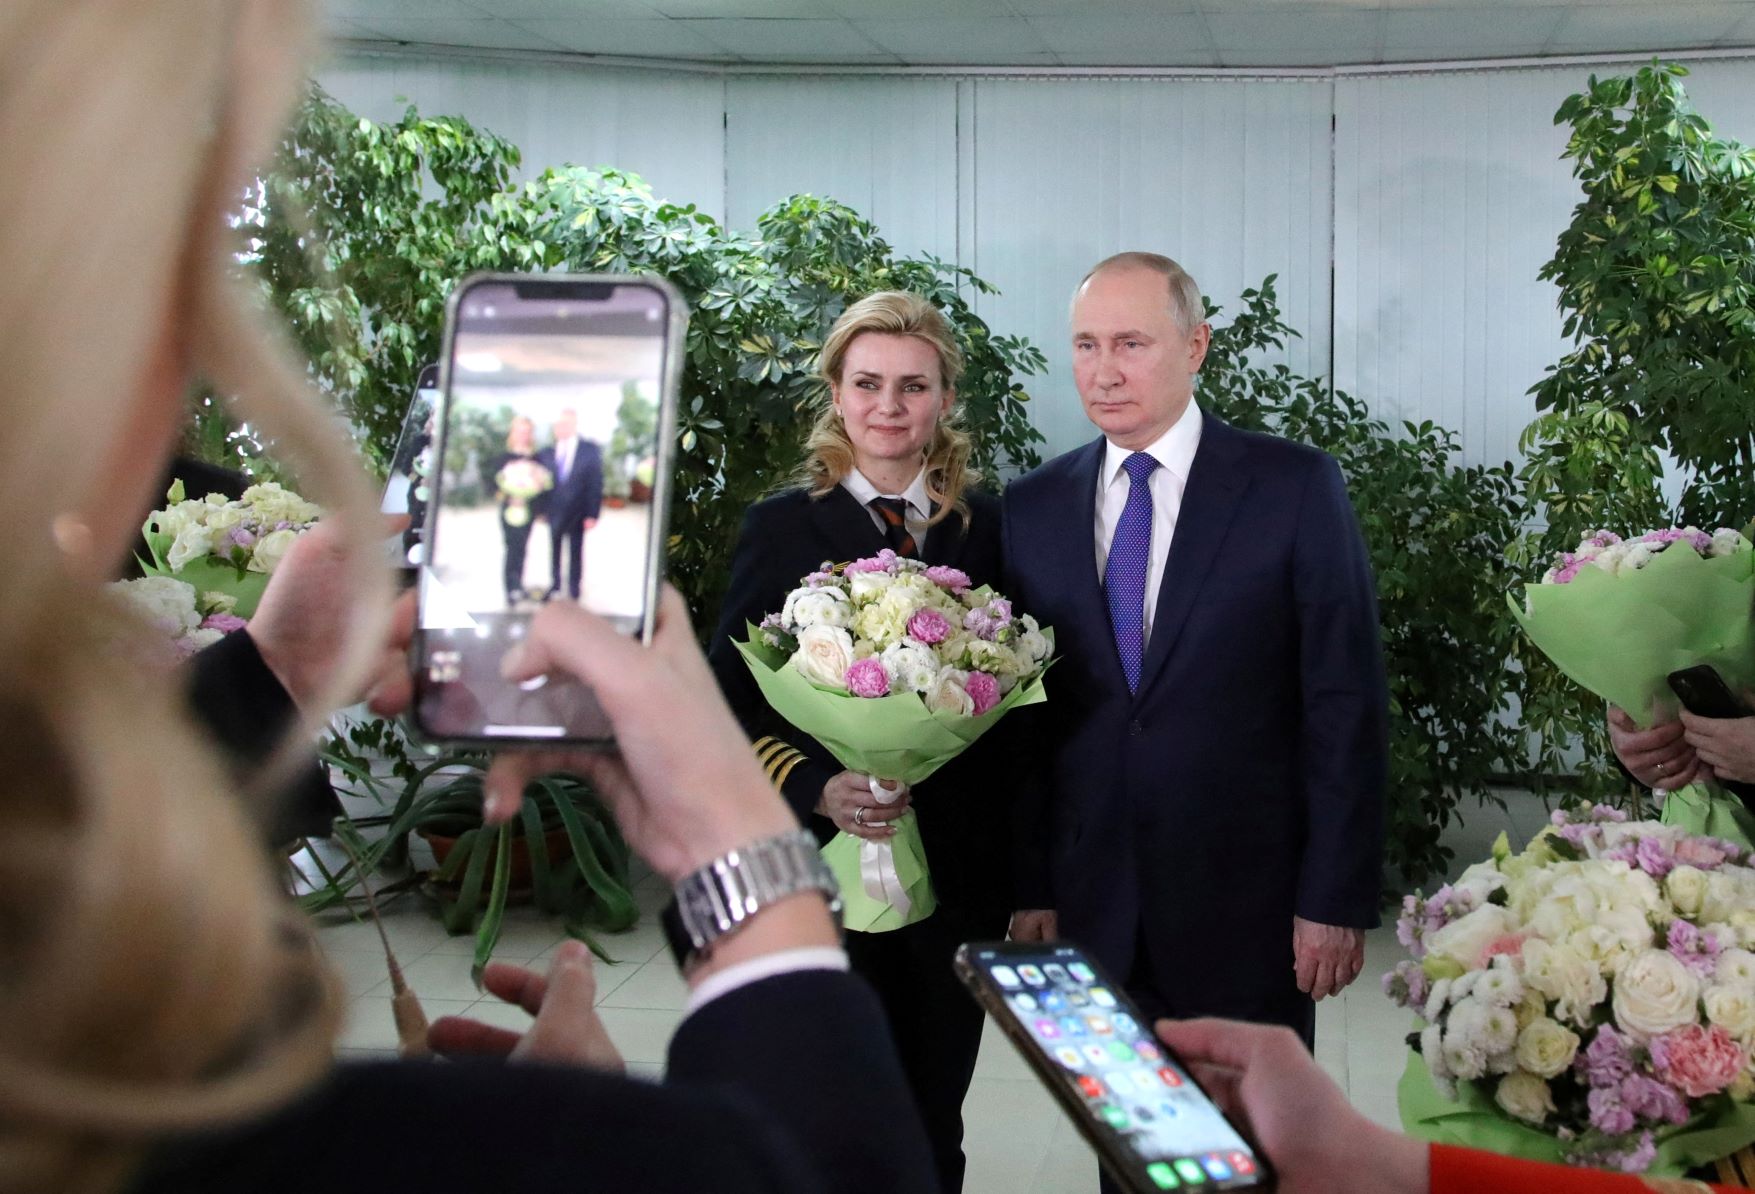 المرأة المحافظة سيدة المنزل في مفهوم بوتين (رويترز)